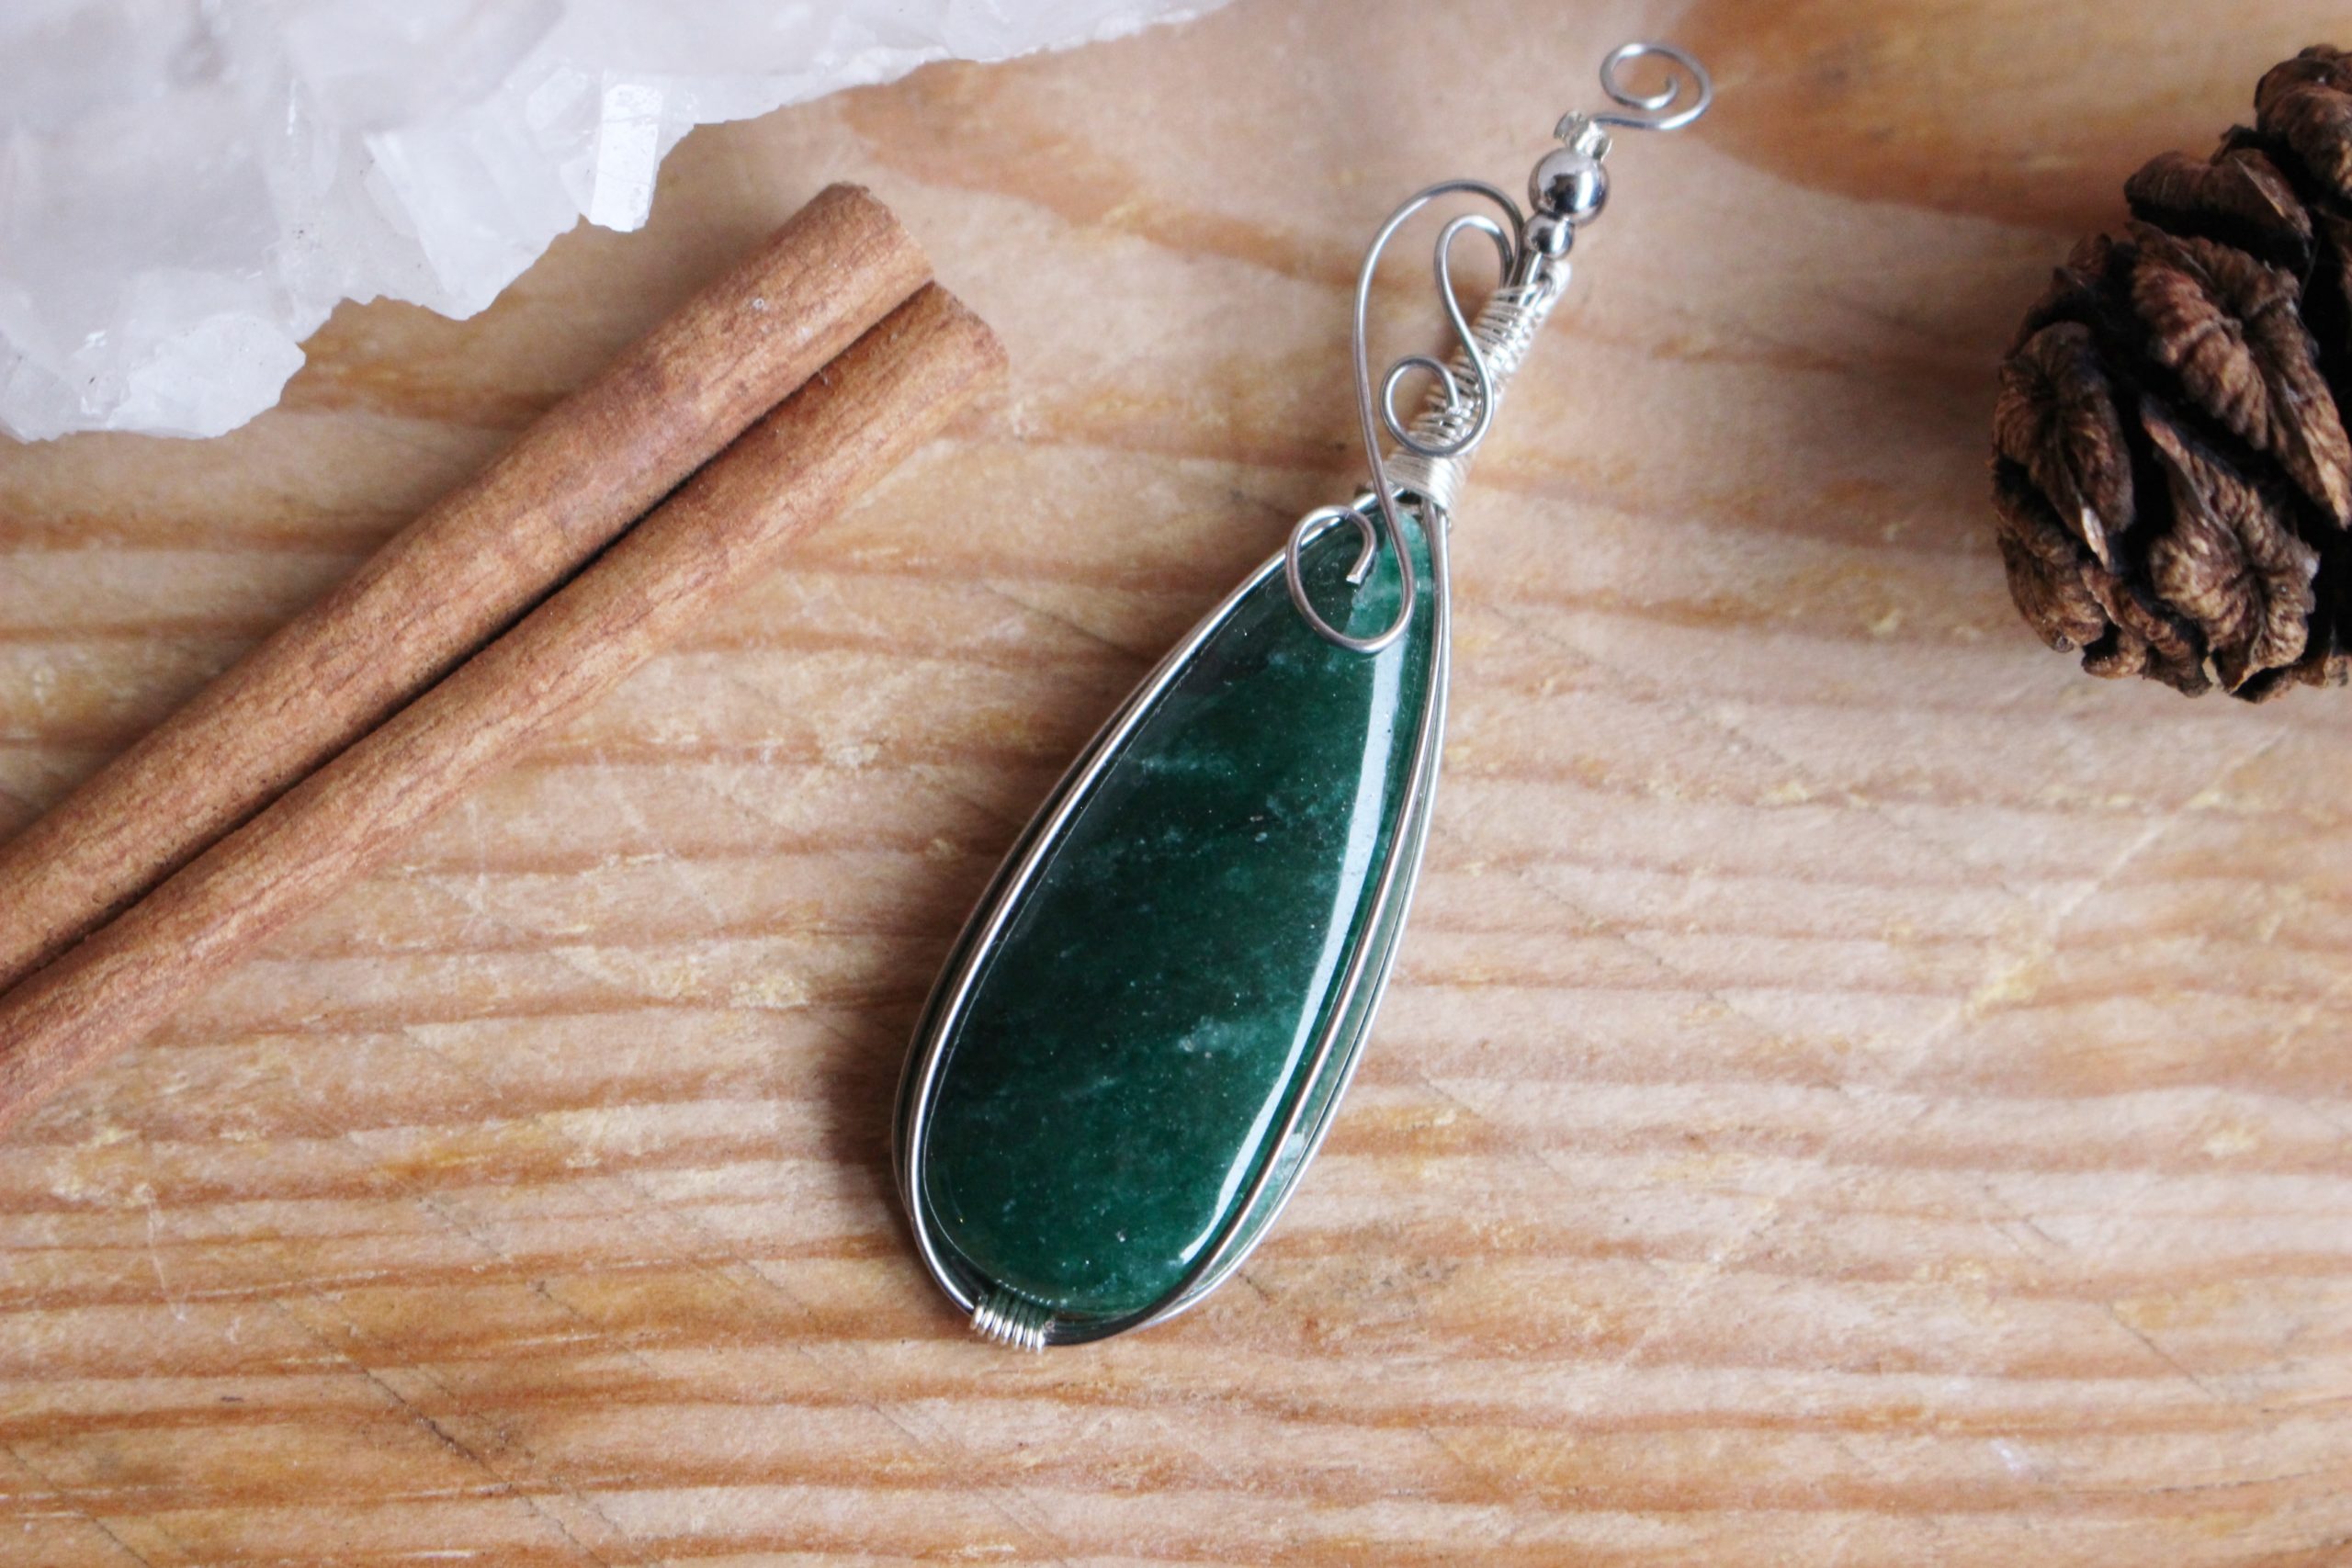 Pendentif en aventurine verte fait main pierre naturelle lithothérapie bien-être minéraux bijoux artisanaux fabriqué en france créatrice cadeau femme